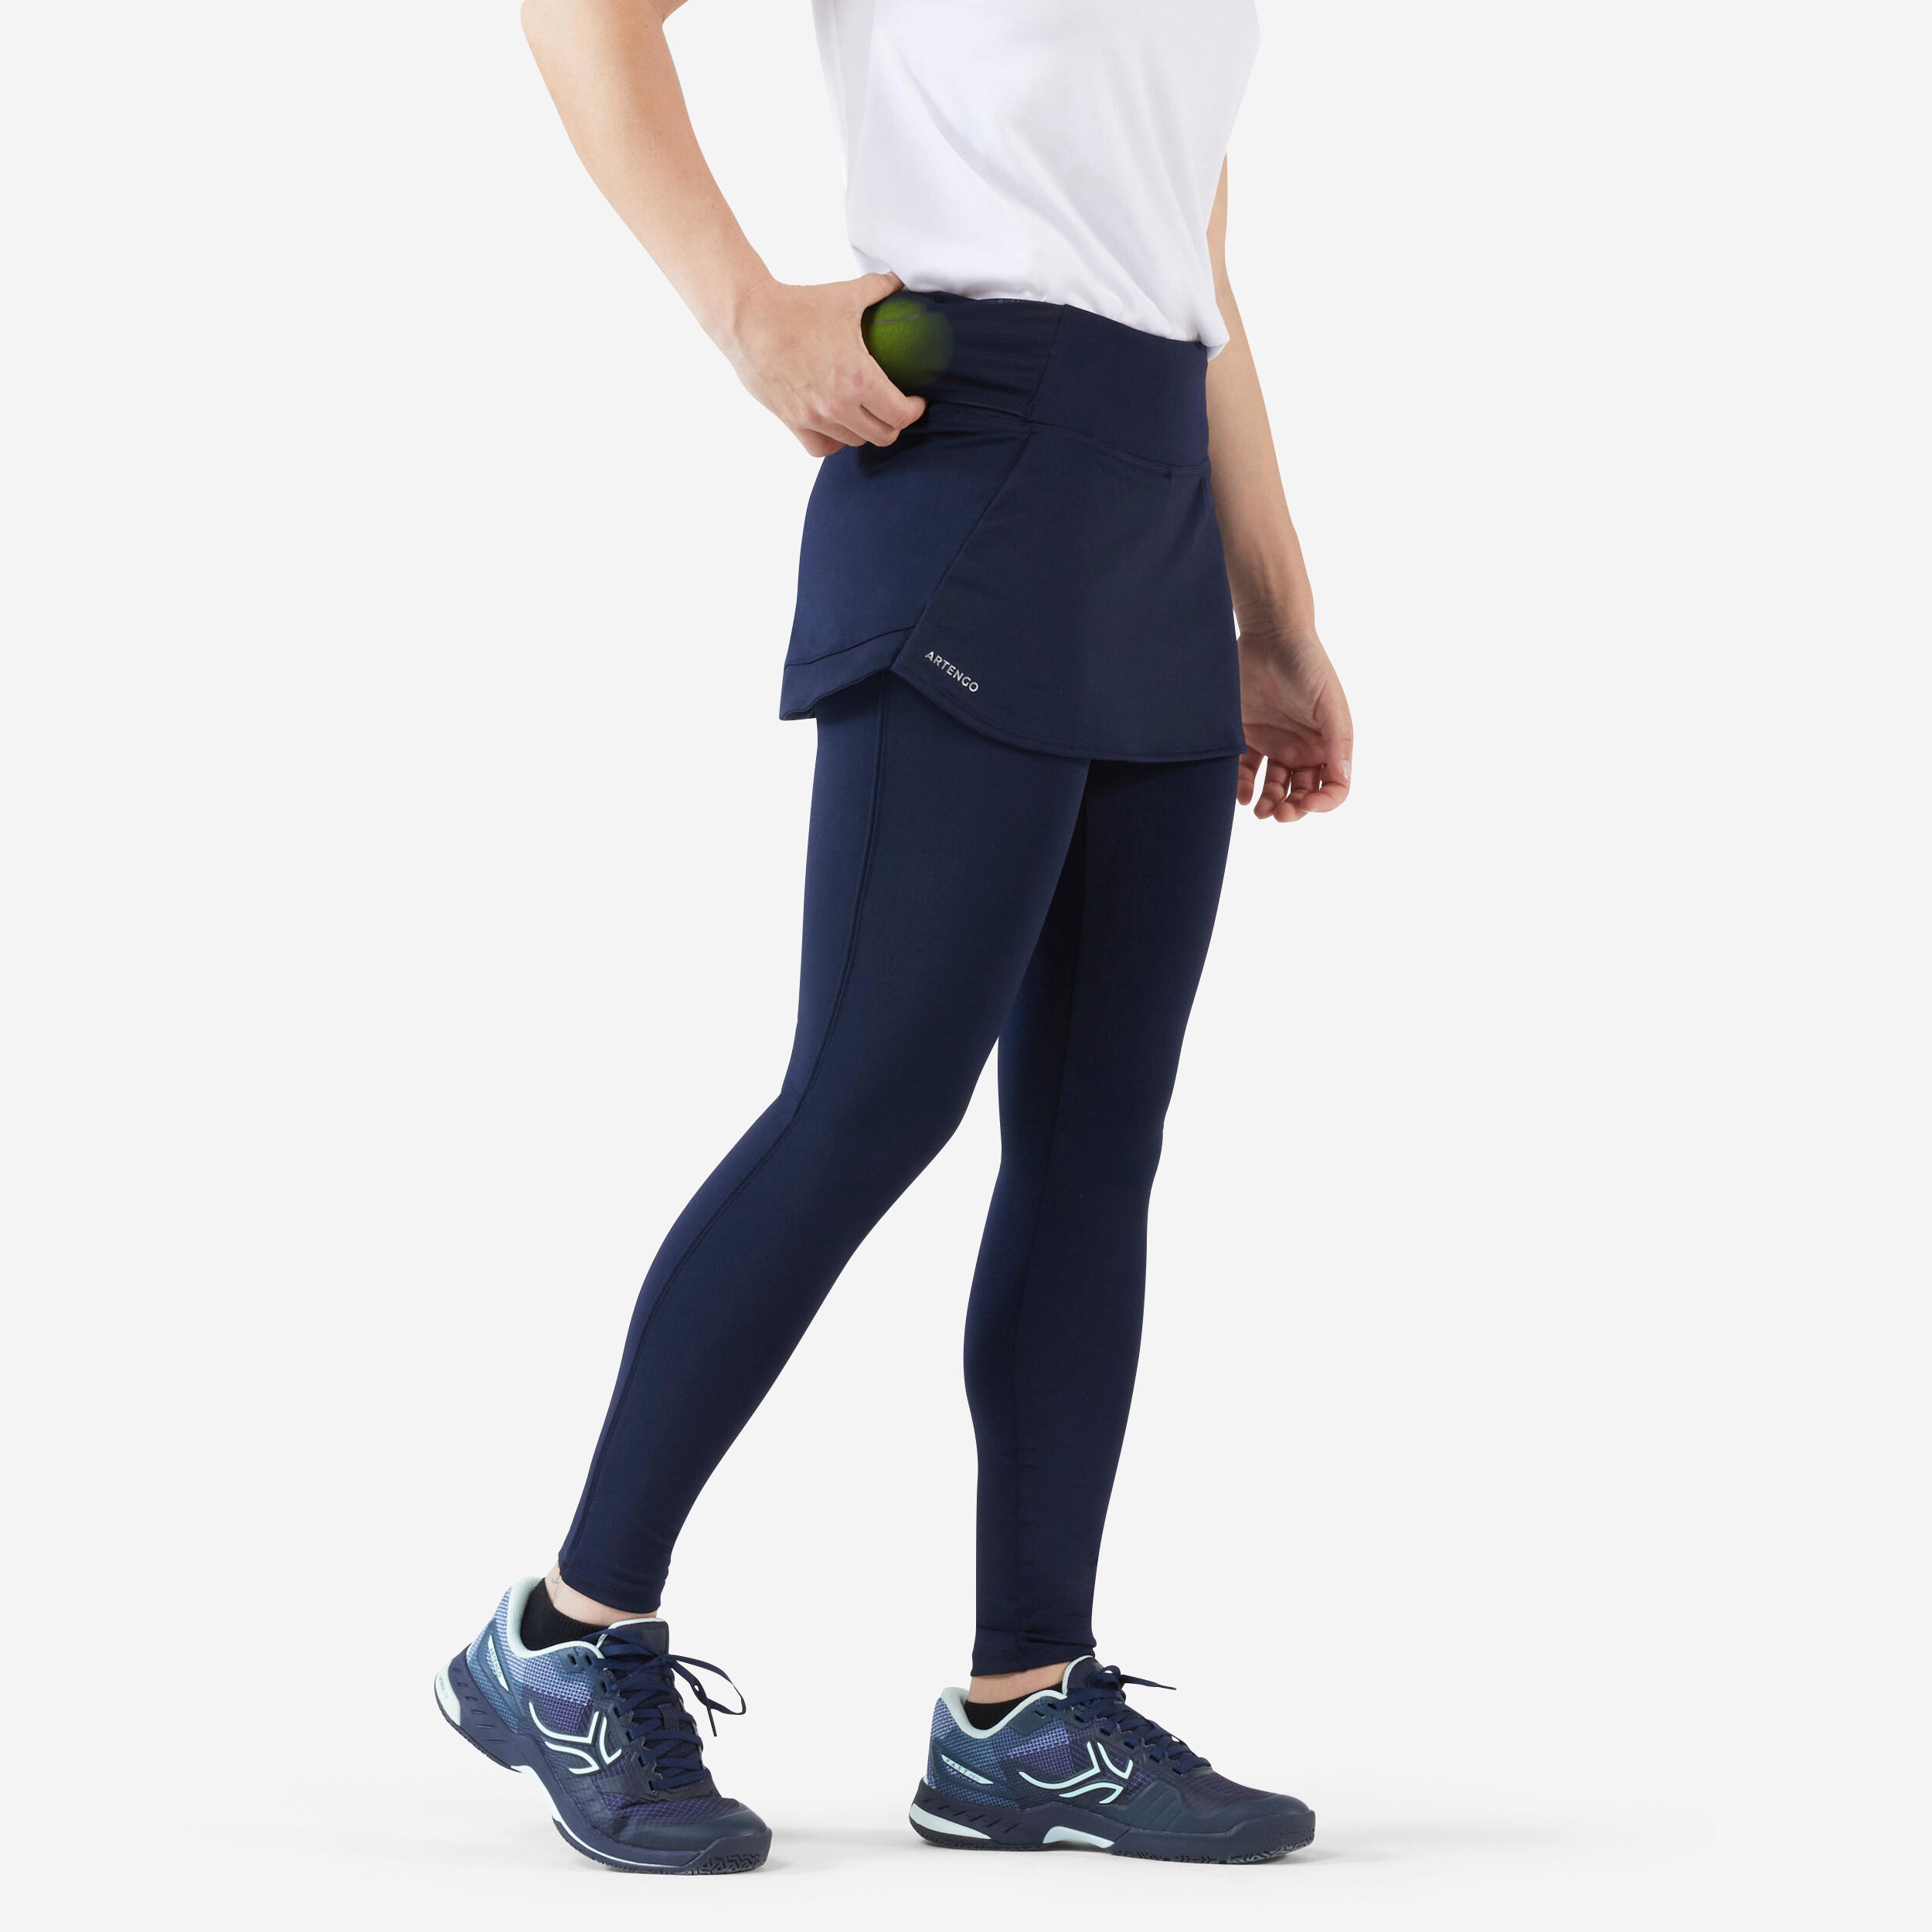 ARTENGO Women's Tennis Hip Ball Skirt + Leggings Dry - Blue/Black